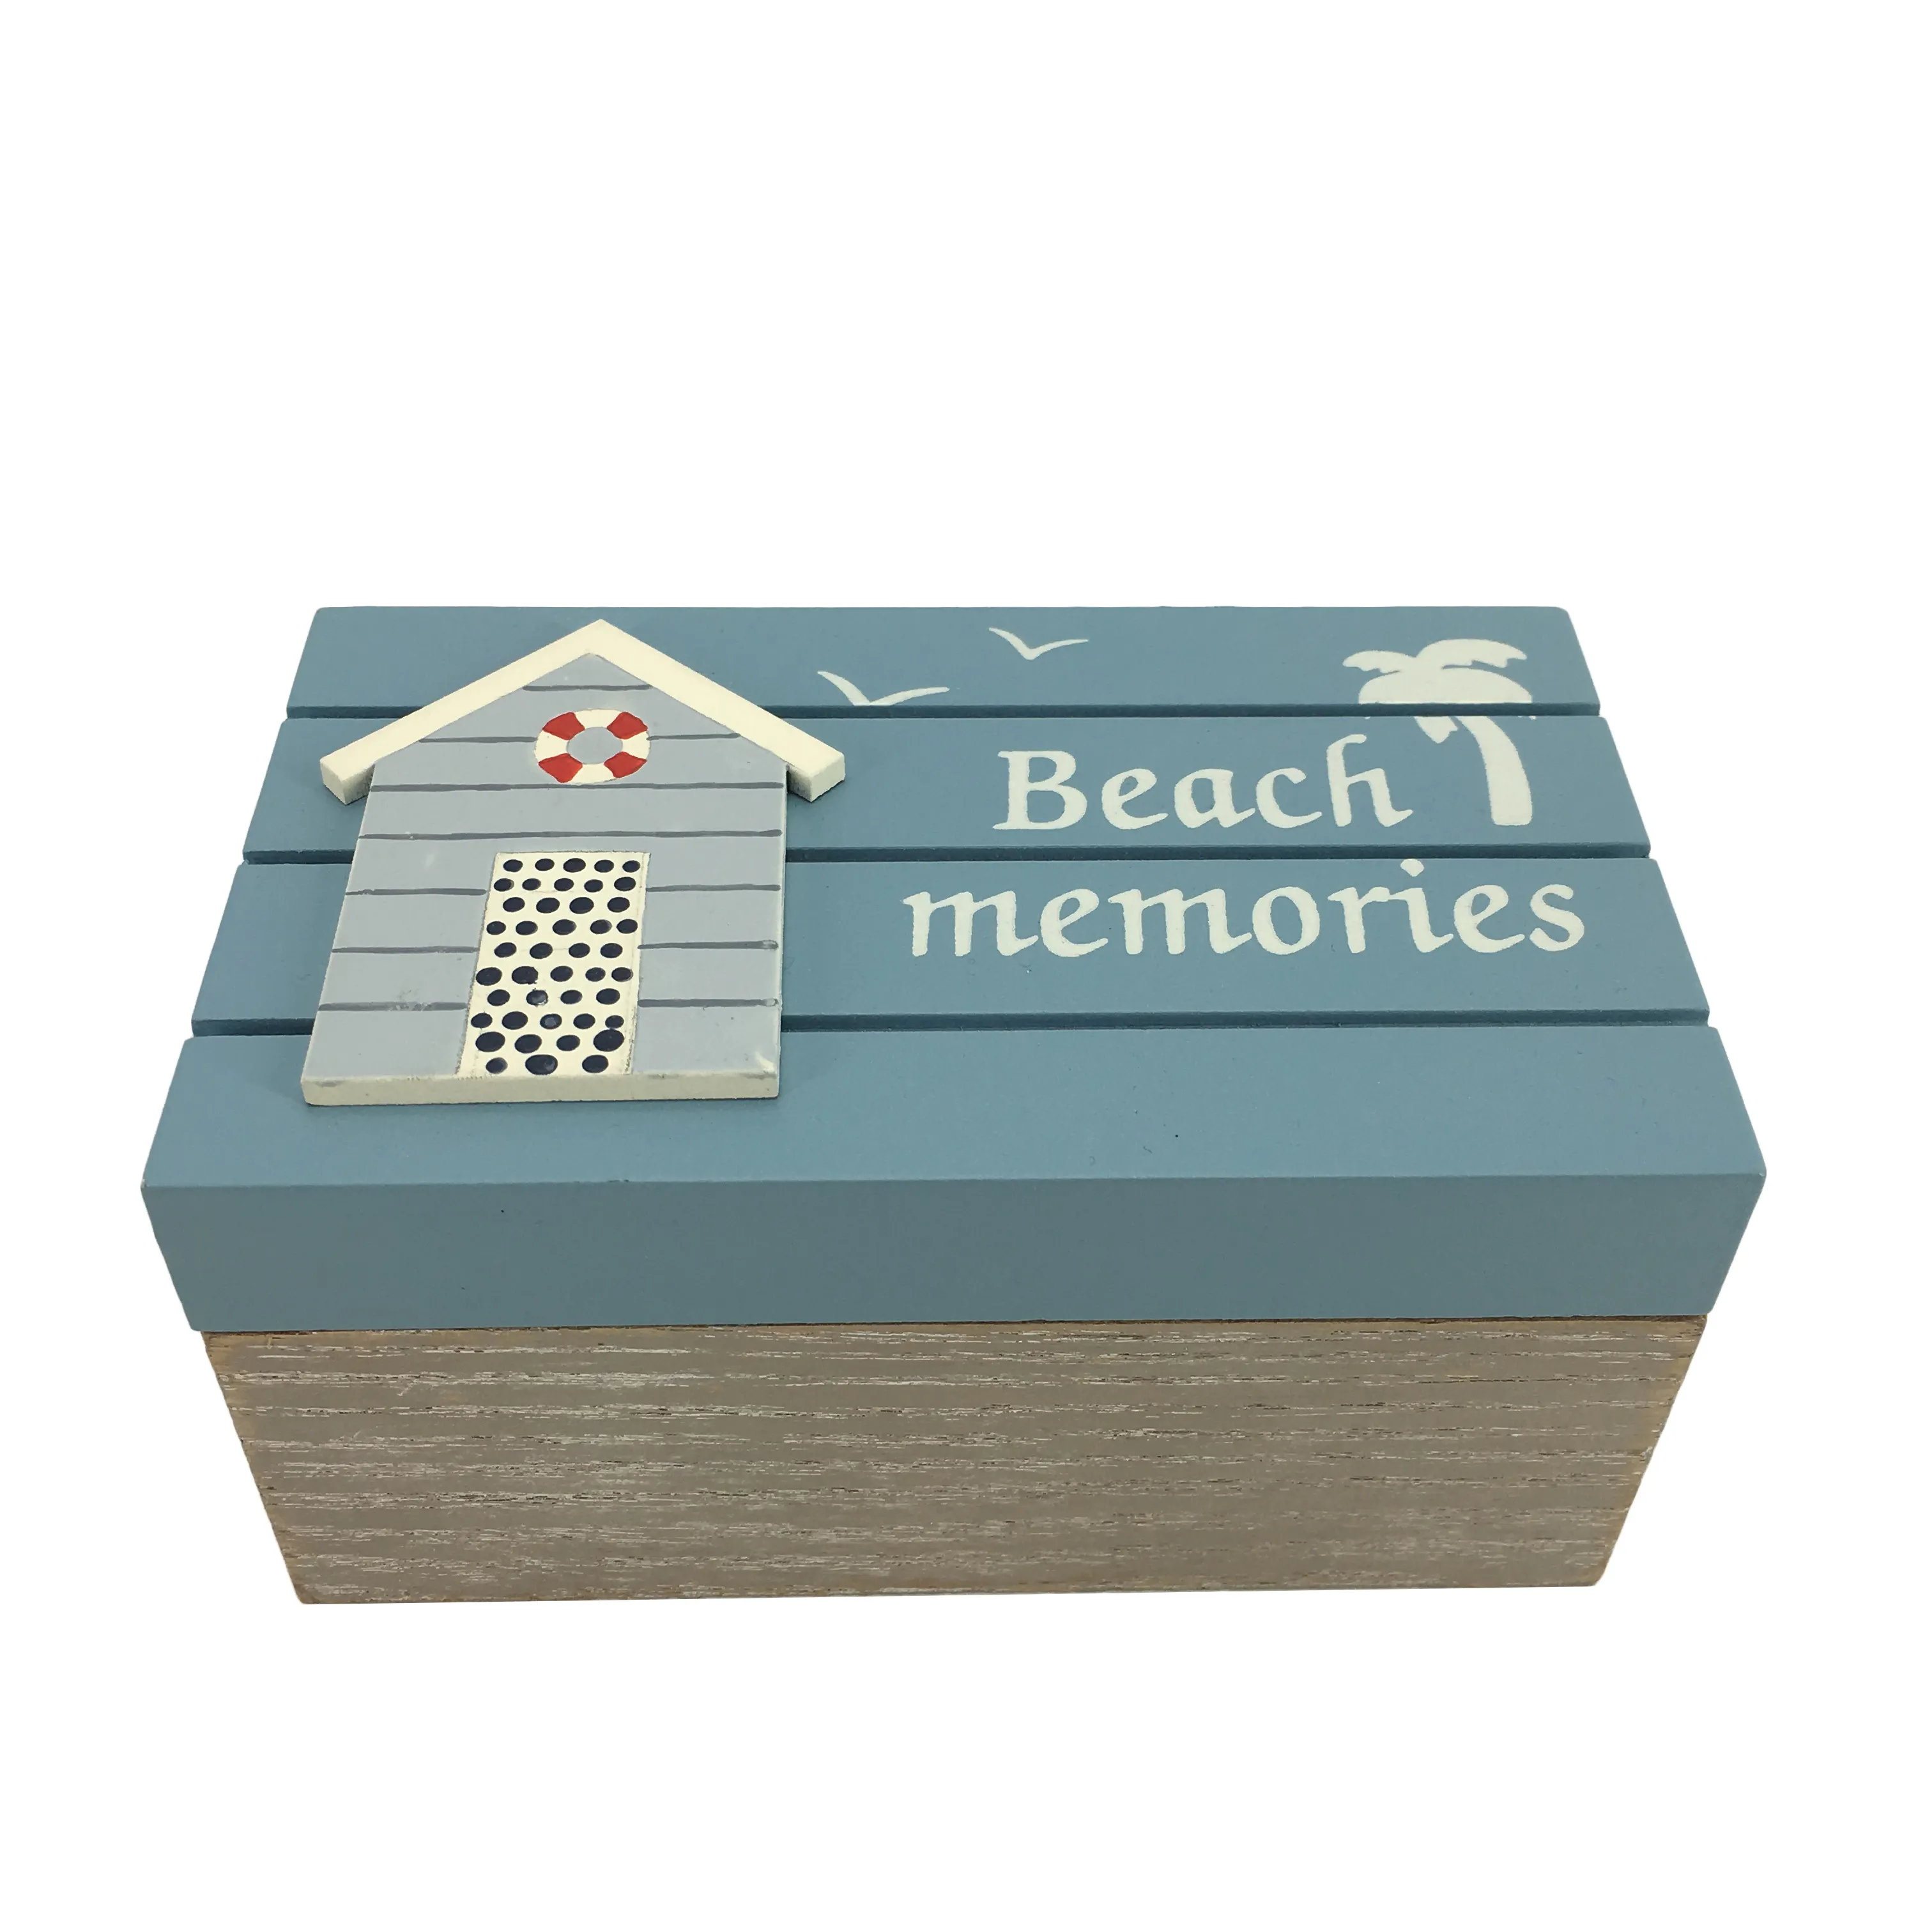 Mini boîte de rangement décorative en bois pour enfants, Mini boîte cadeau en bois peinte fantaisie d'été de mer bleue pour la décoration